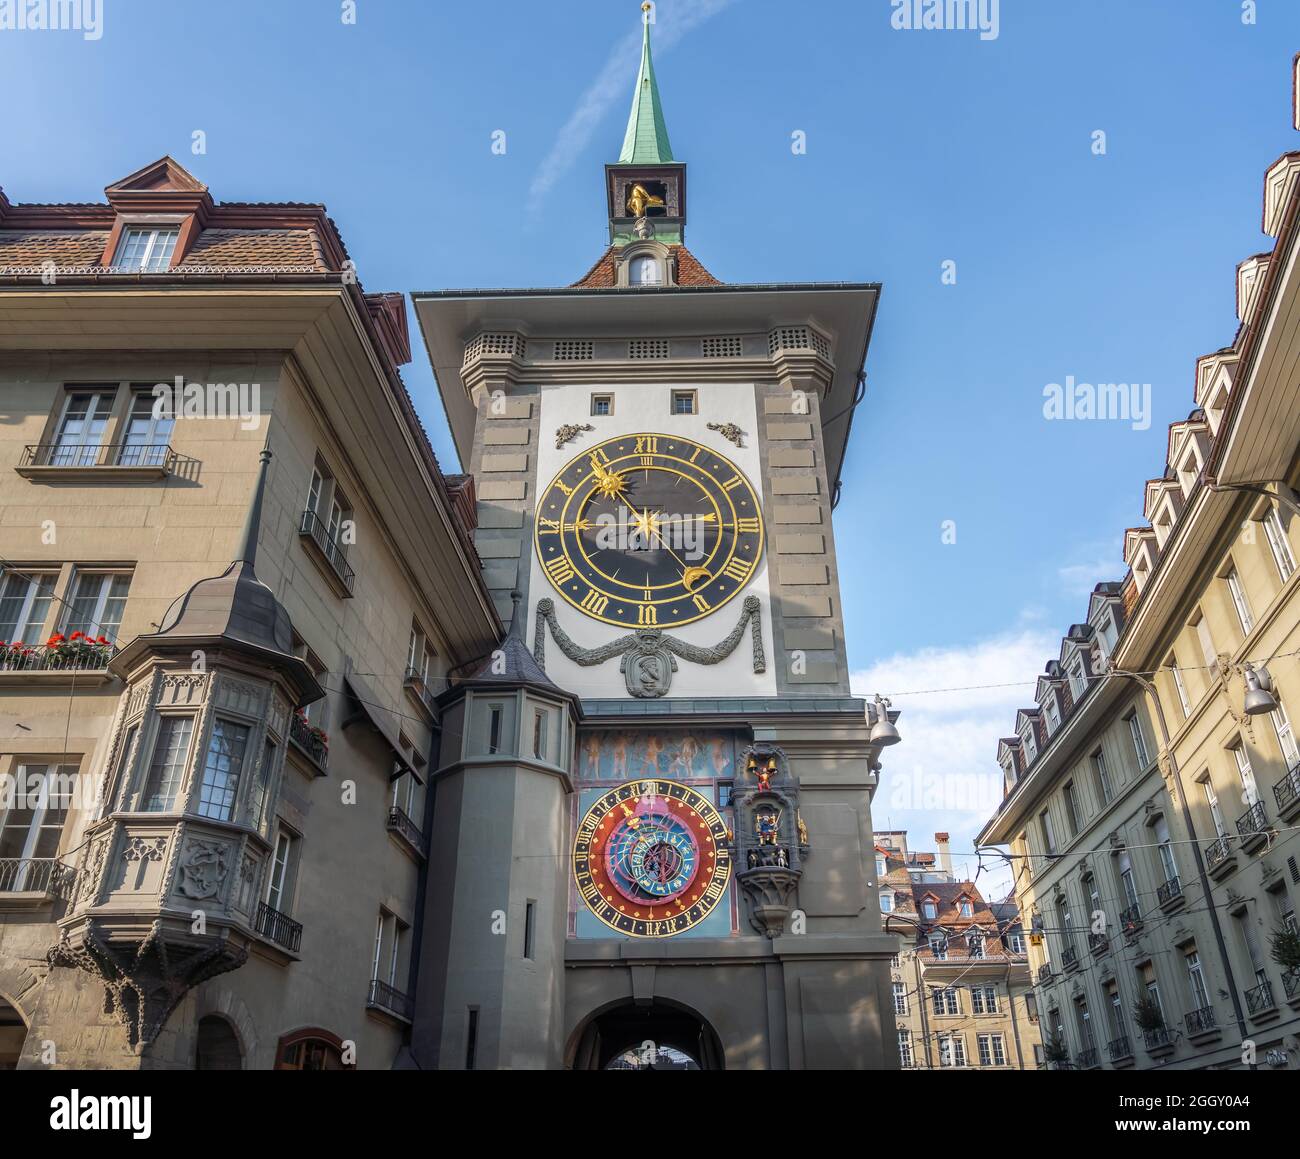 Façade est de Zytglogge avec l'horloge astronomique - Tour de l'horloge médiévale - Berne, Suisse Banque D'Images